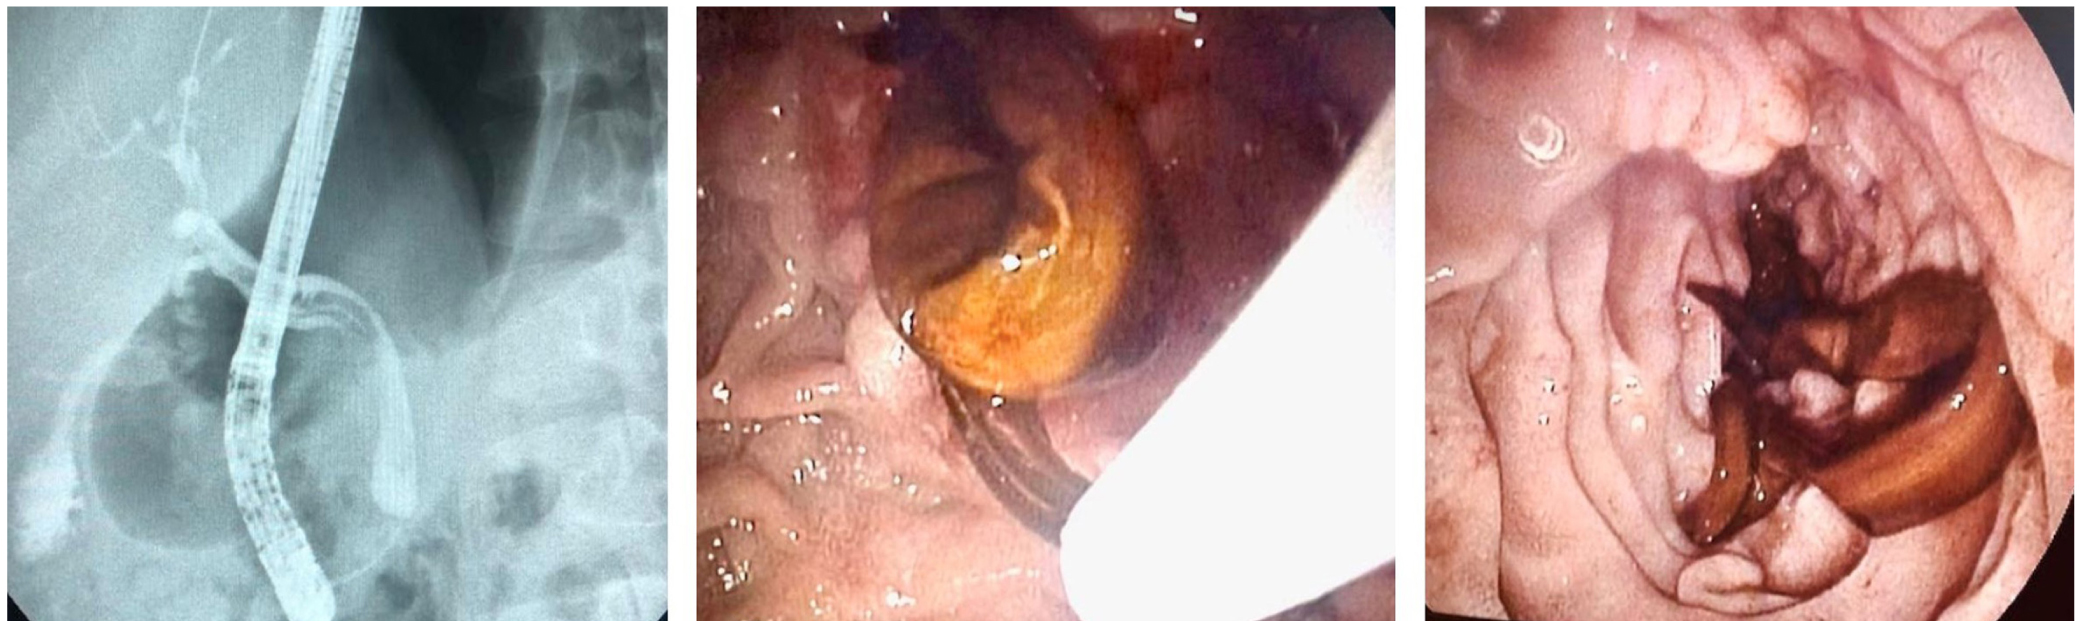 Figura 3. CPRE: vía biliar levemente dilatada de 7 a 8 mm, con defecto de llenado alargado e imagen en doble riel, por presencia de áscaris.